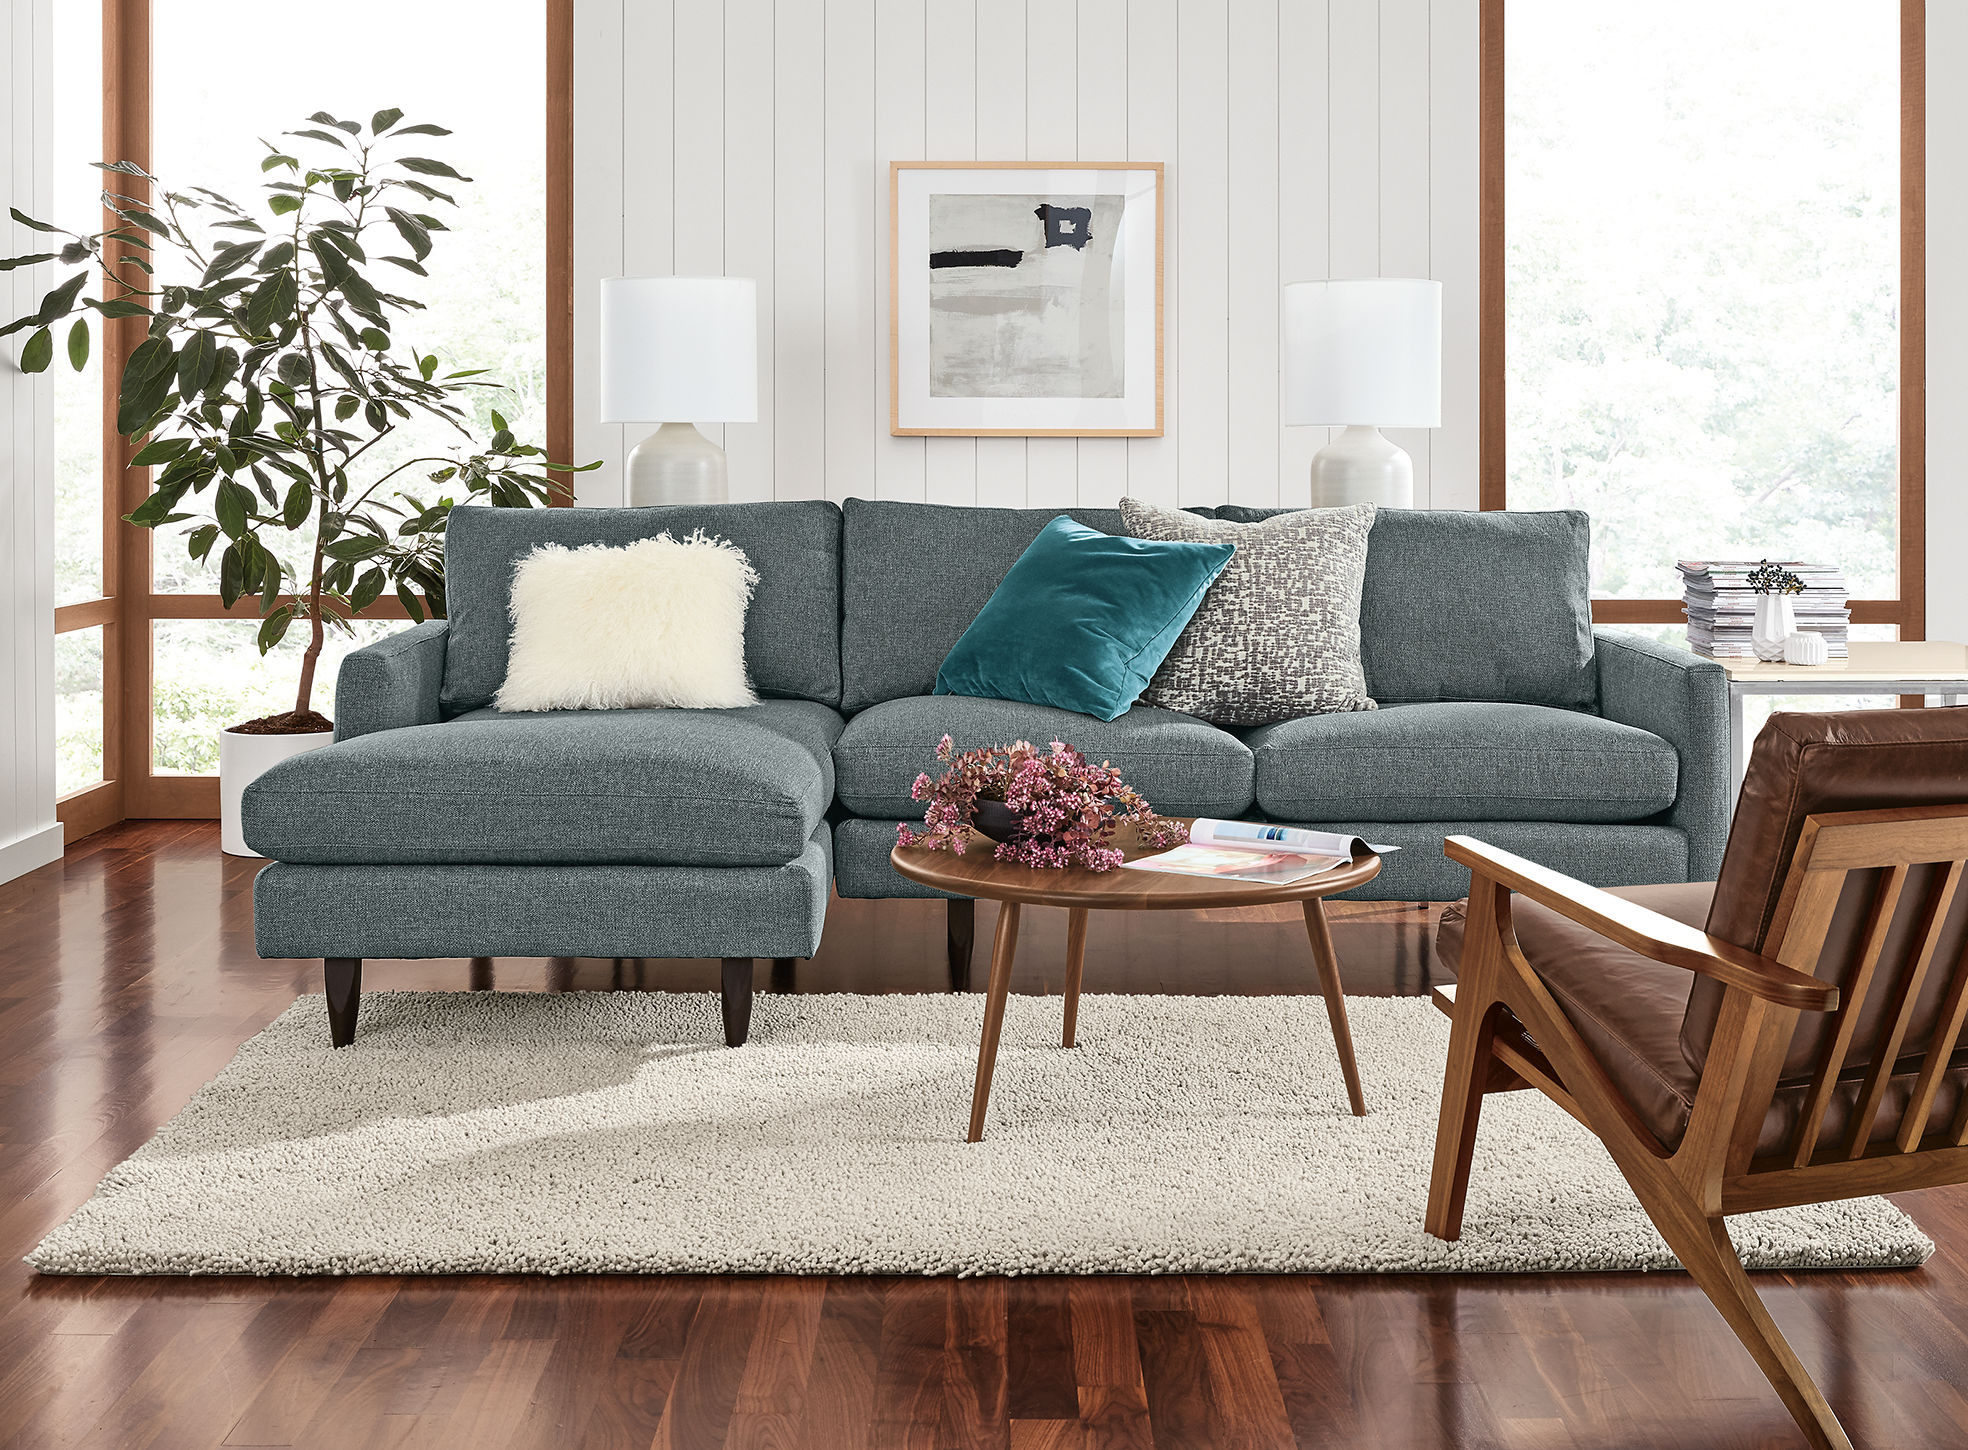 yorktown hardwood flooring toronto of modern living room furniture living room board pertaining to jasper 006514 18e g